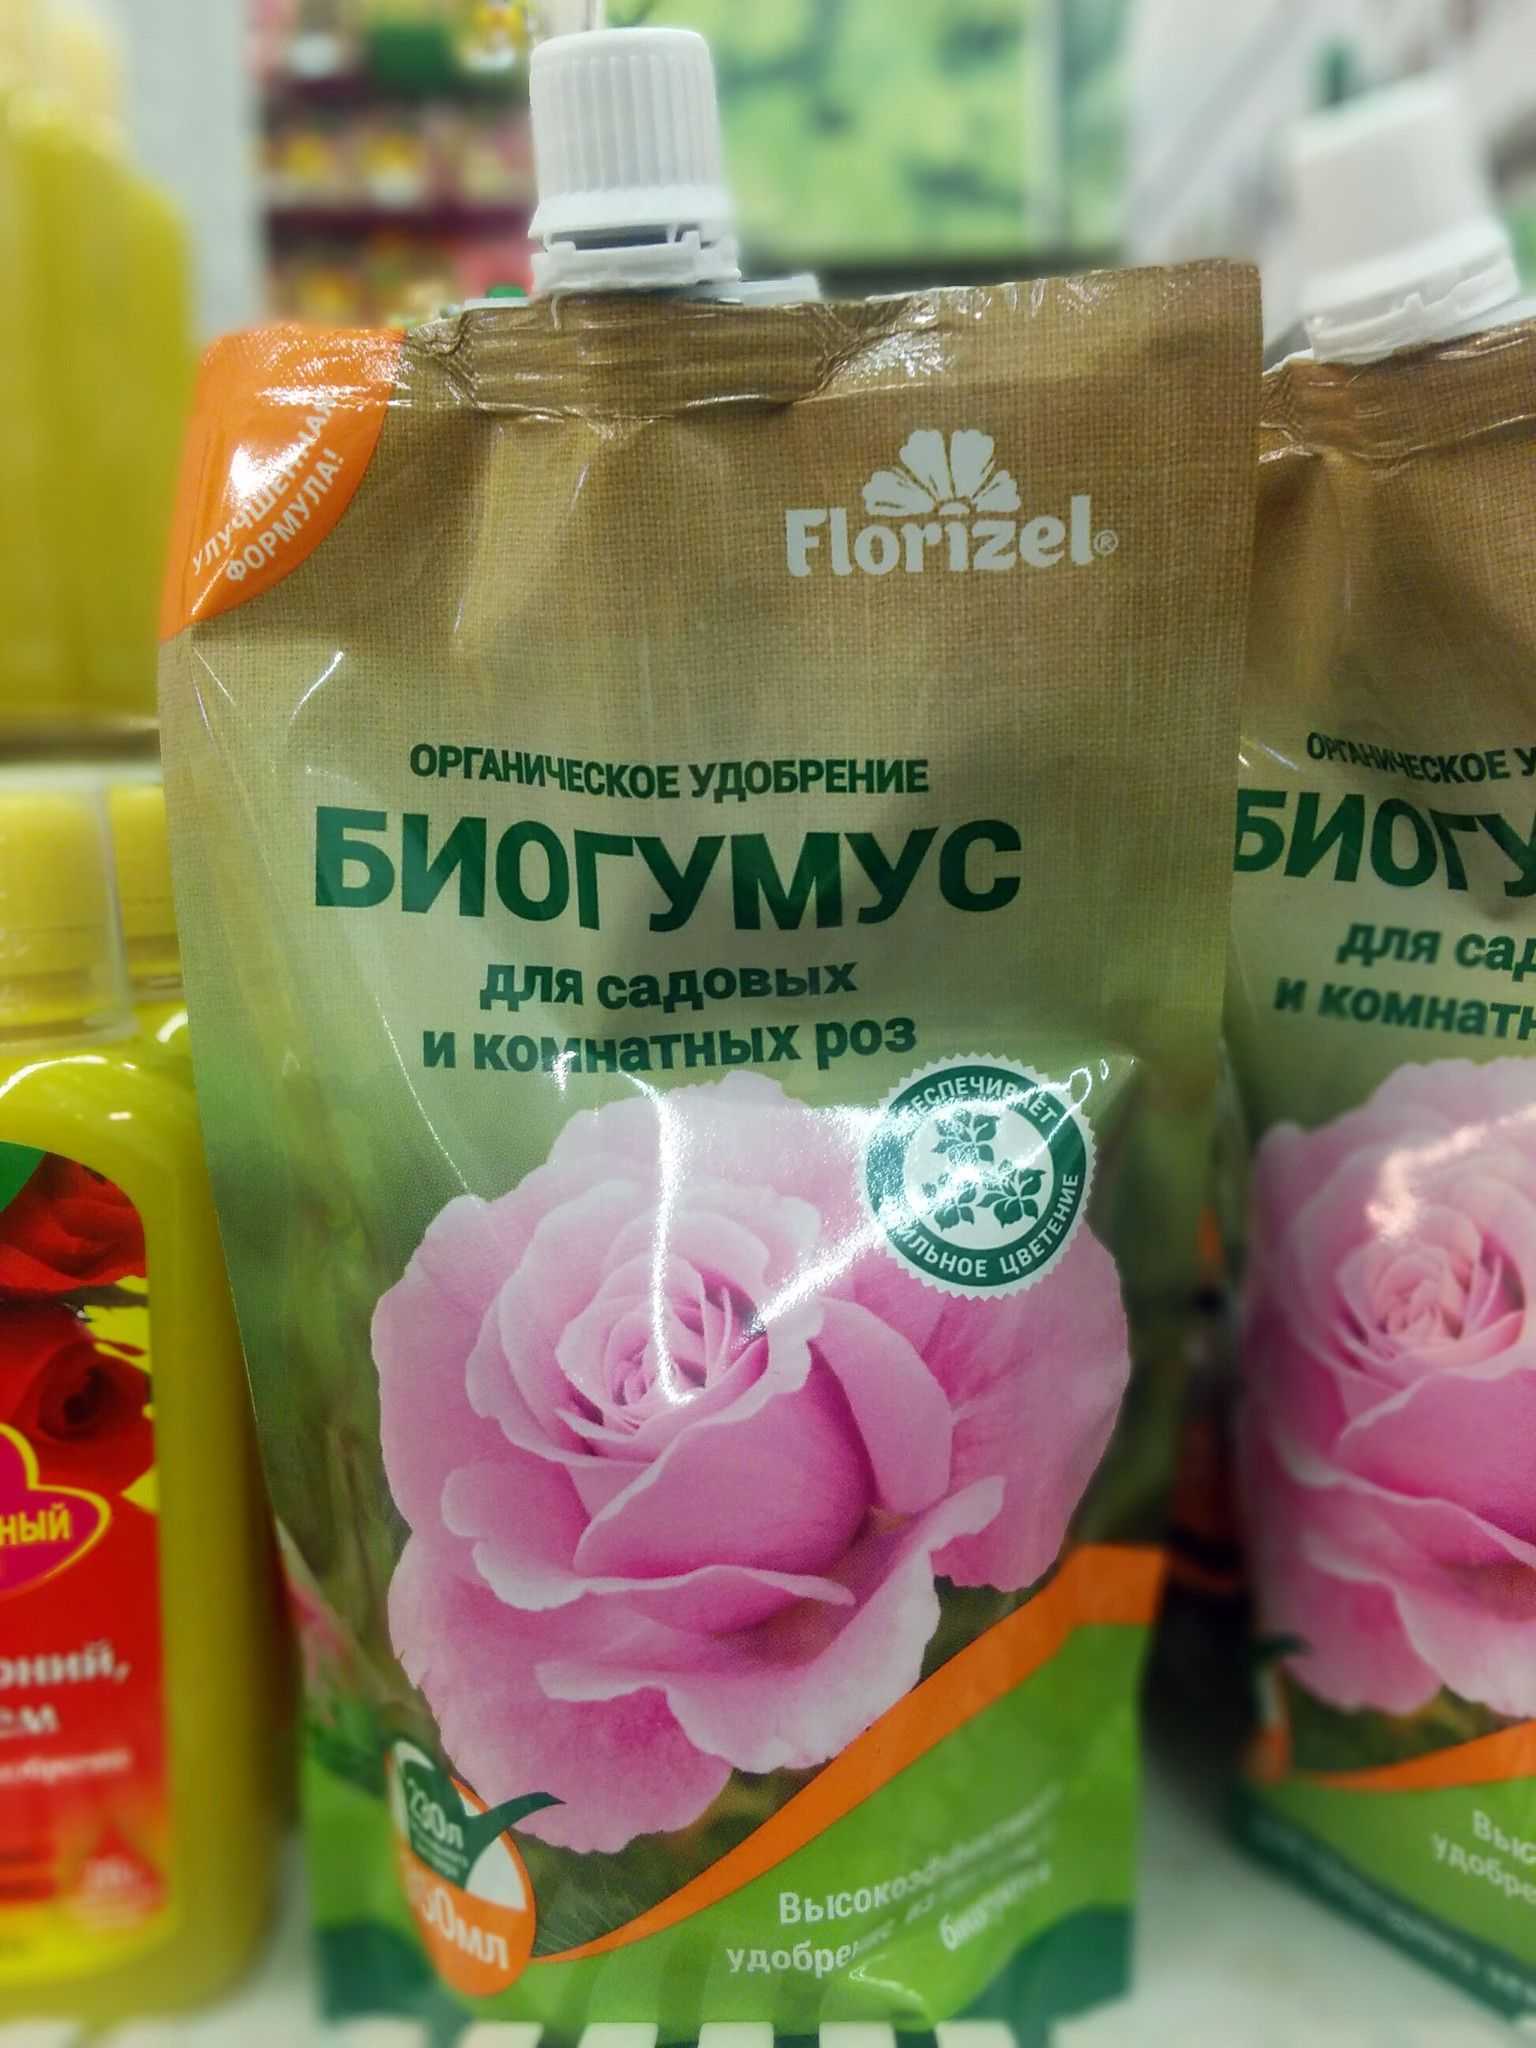 Когда и чем подкормить розы, чтобы получить обильноцветущие и здоровые кусты: 5 основных сезонных подкормок на supersadovnik.ru